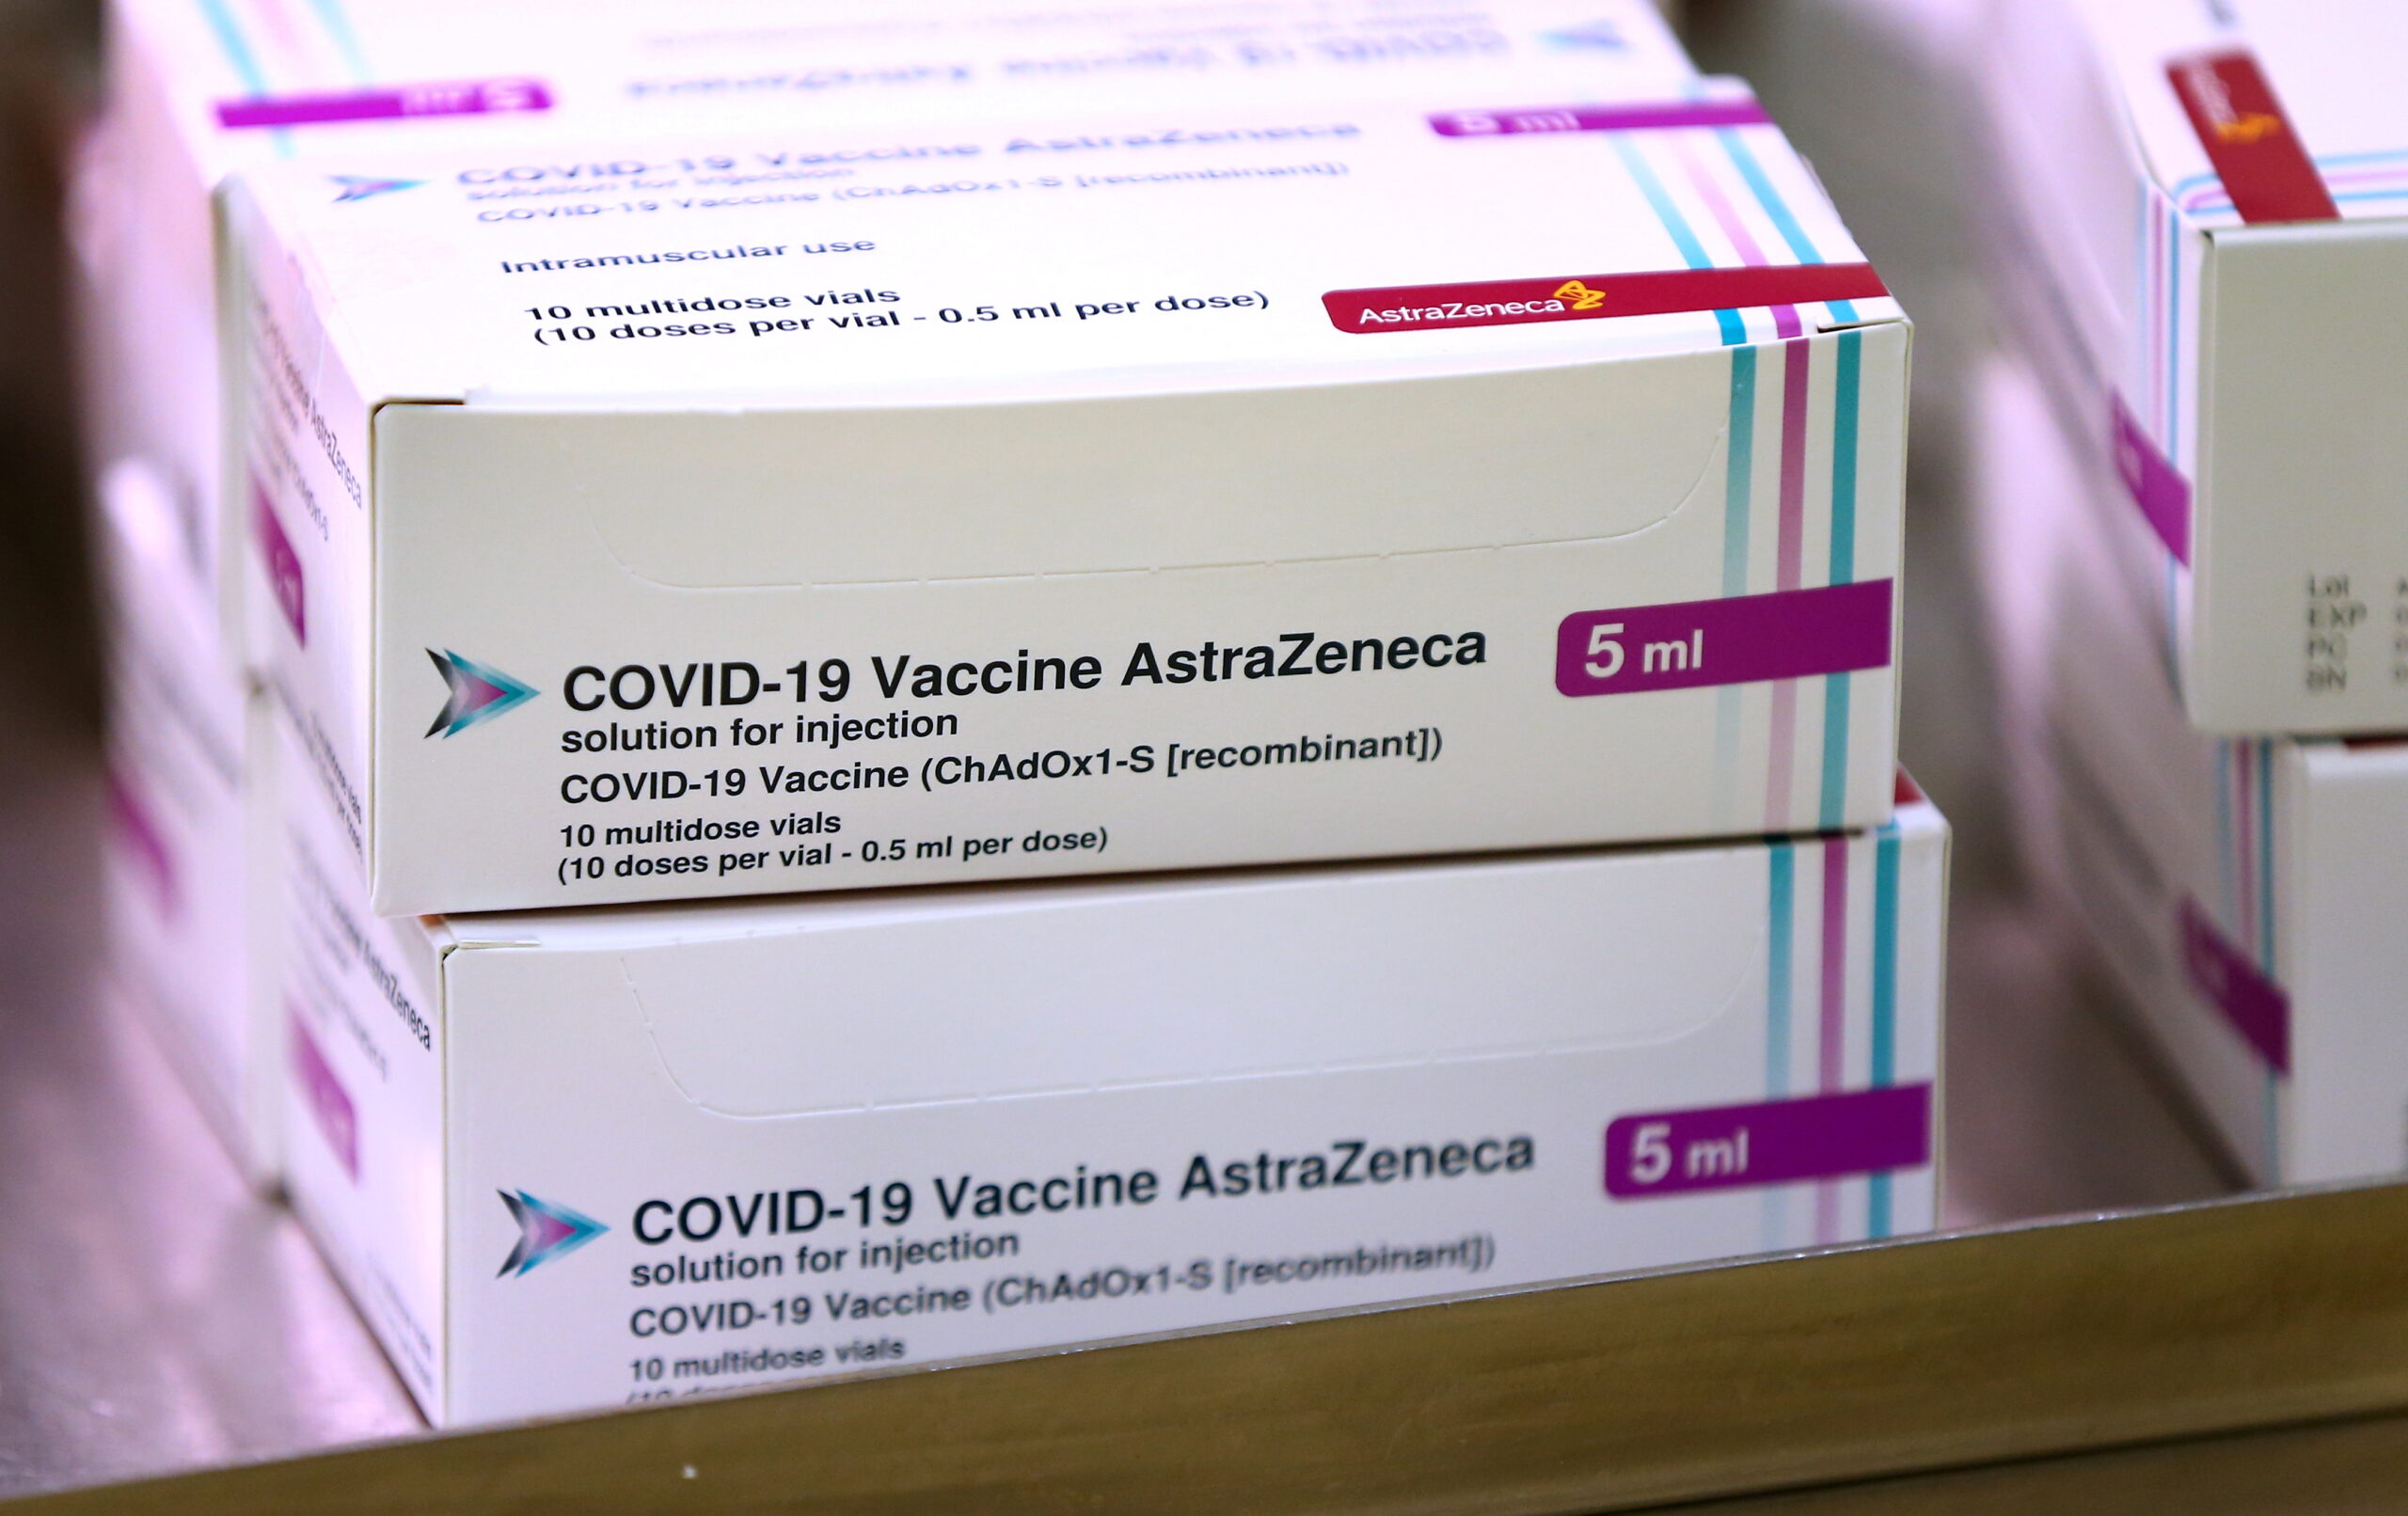 Llega a México sustancia activa de vacuna anticovid de AstraZeneca